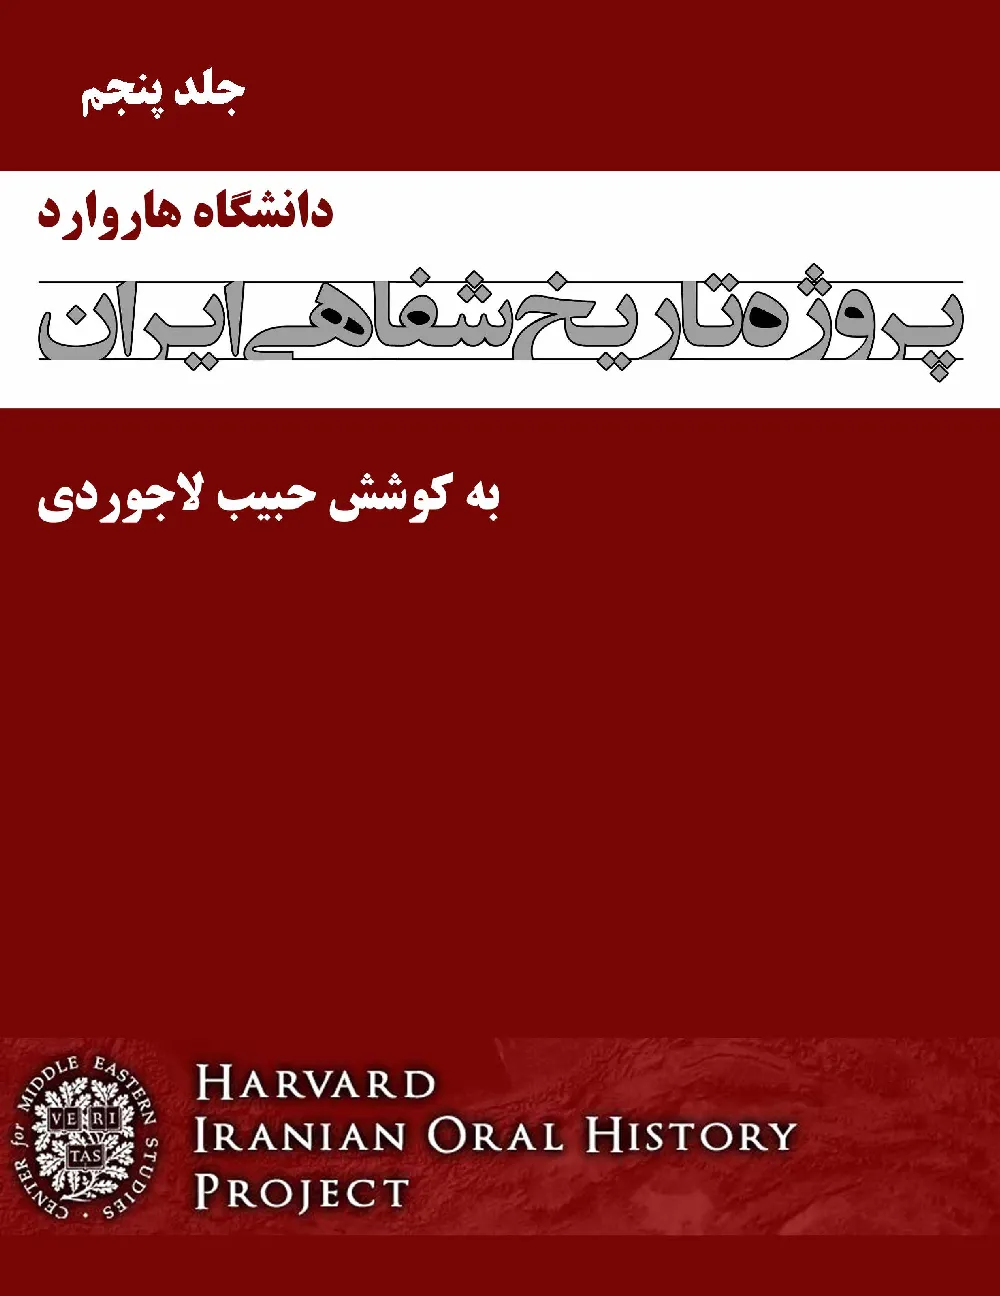 پروژه تاریخ شفاهی ایران، دانشگاه هاروارد – جلد پنجم